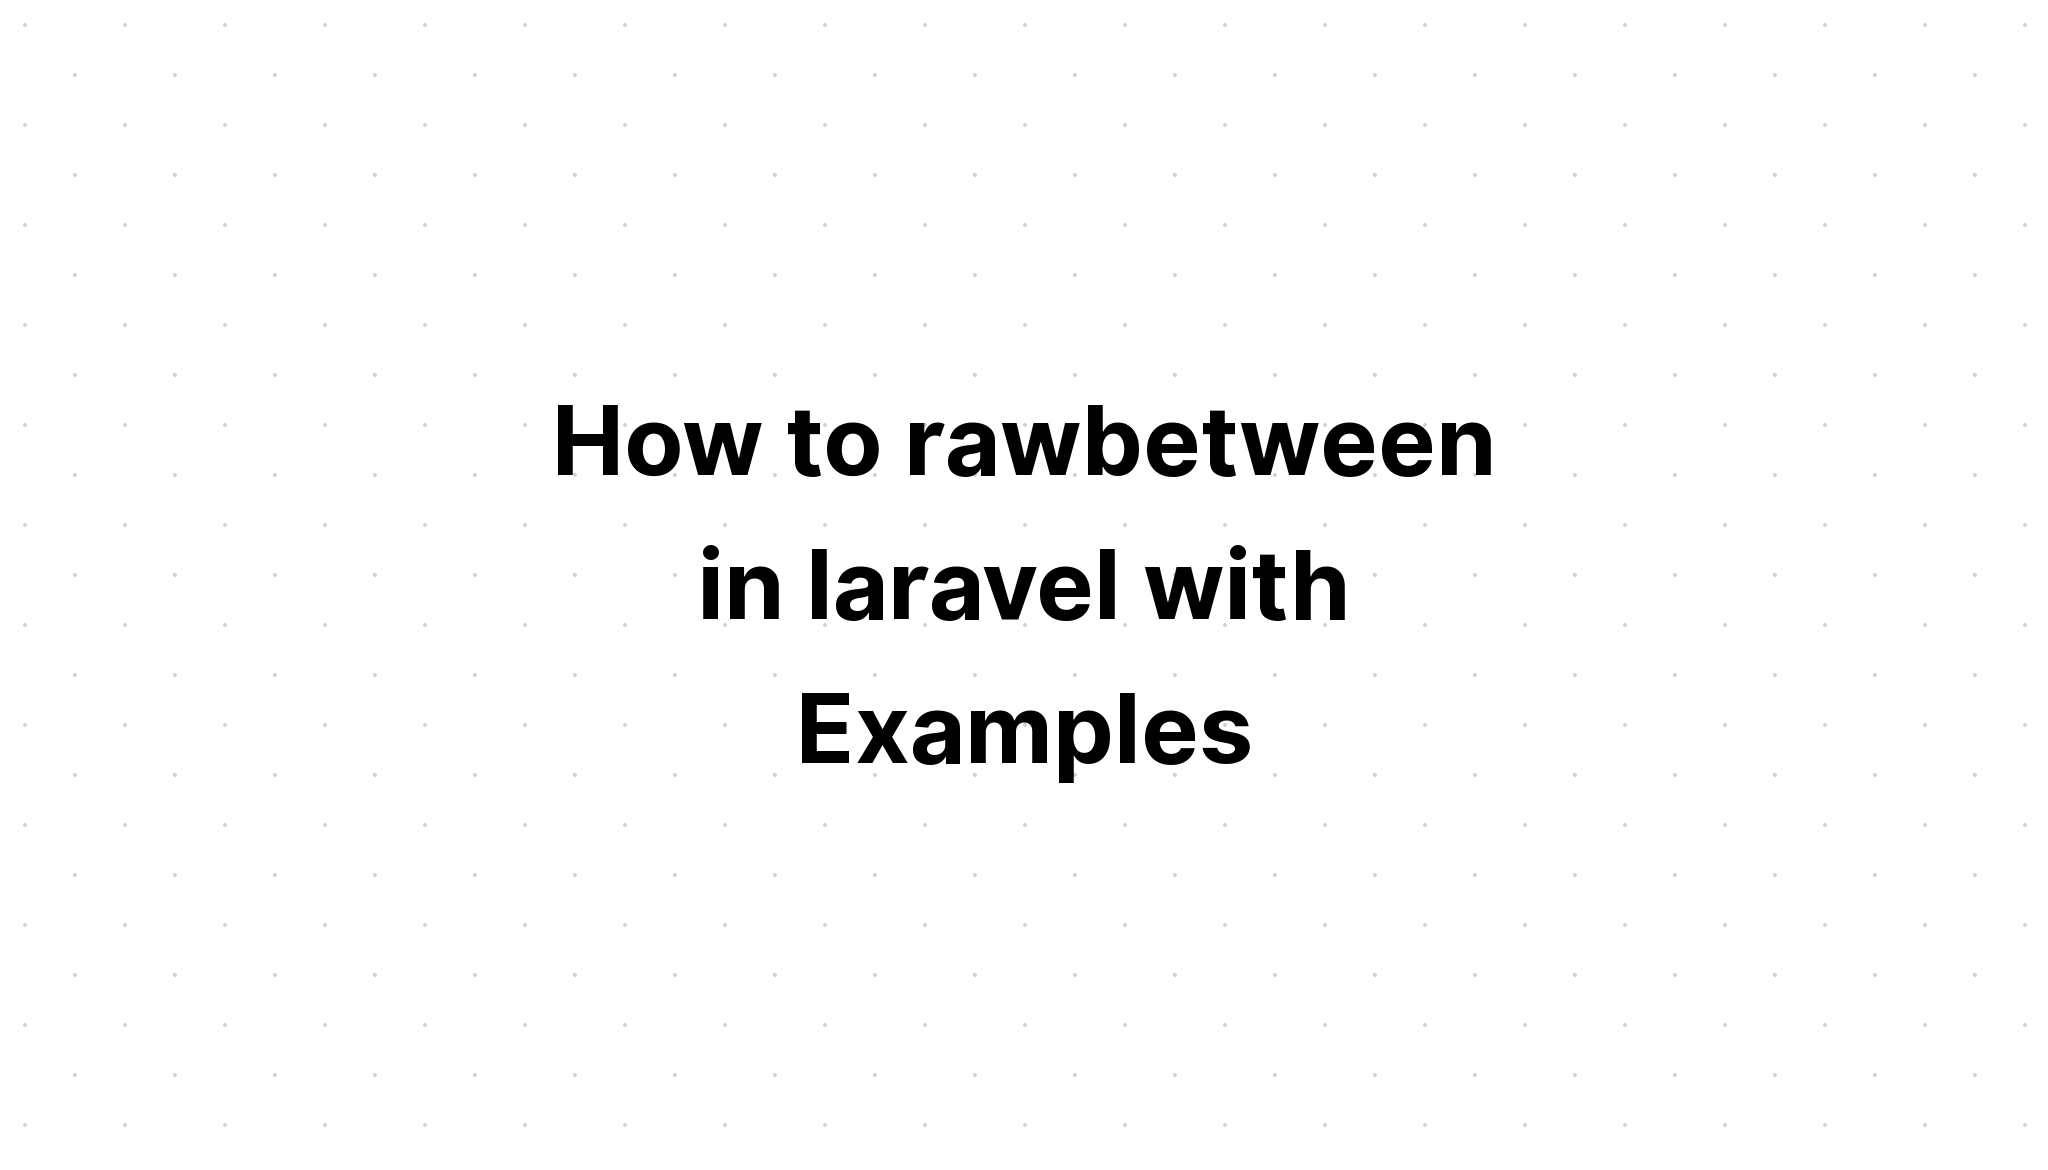 Cách rawbetween trong laravel với các ví dụ